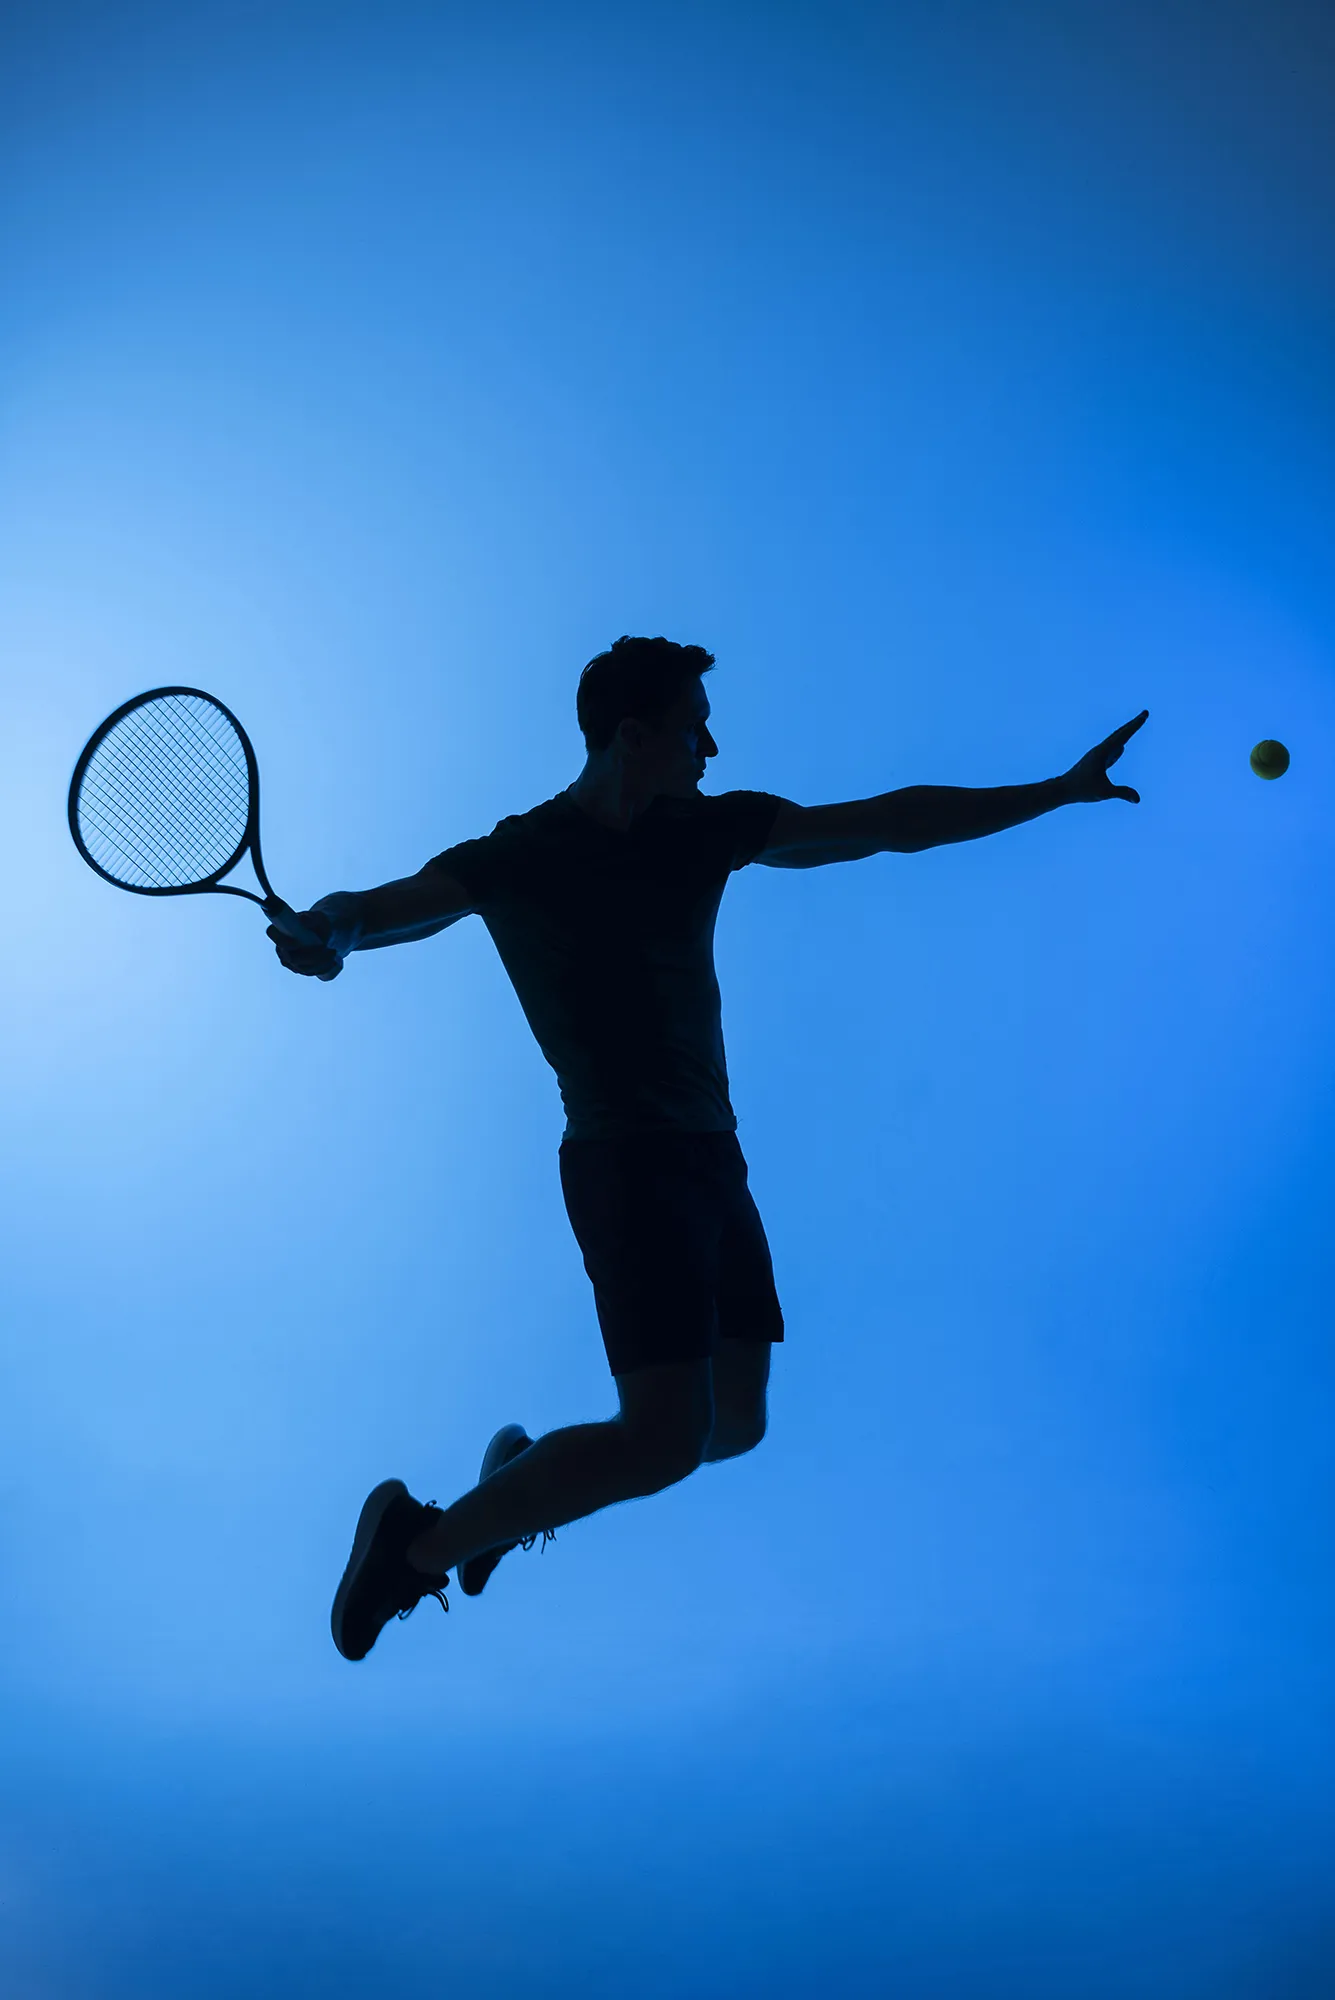 La silhouette di un tennista in salto pronto a colpire una palla da tennis, su uno sfondo azzurro